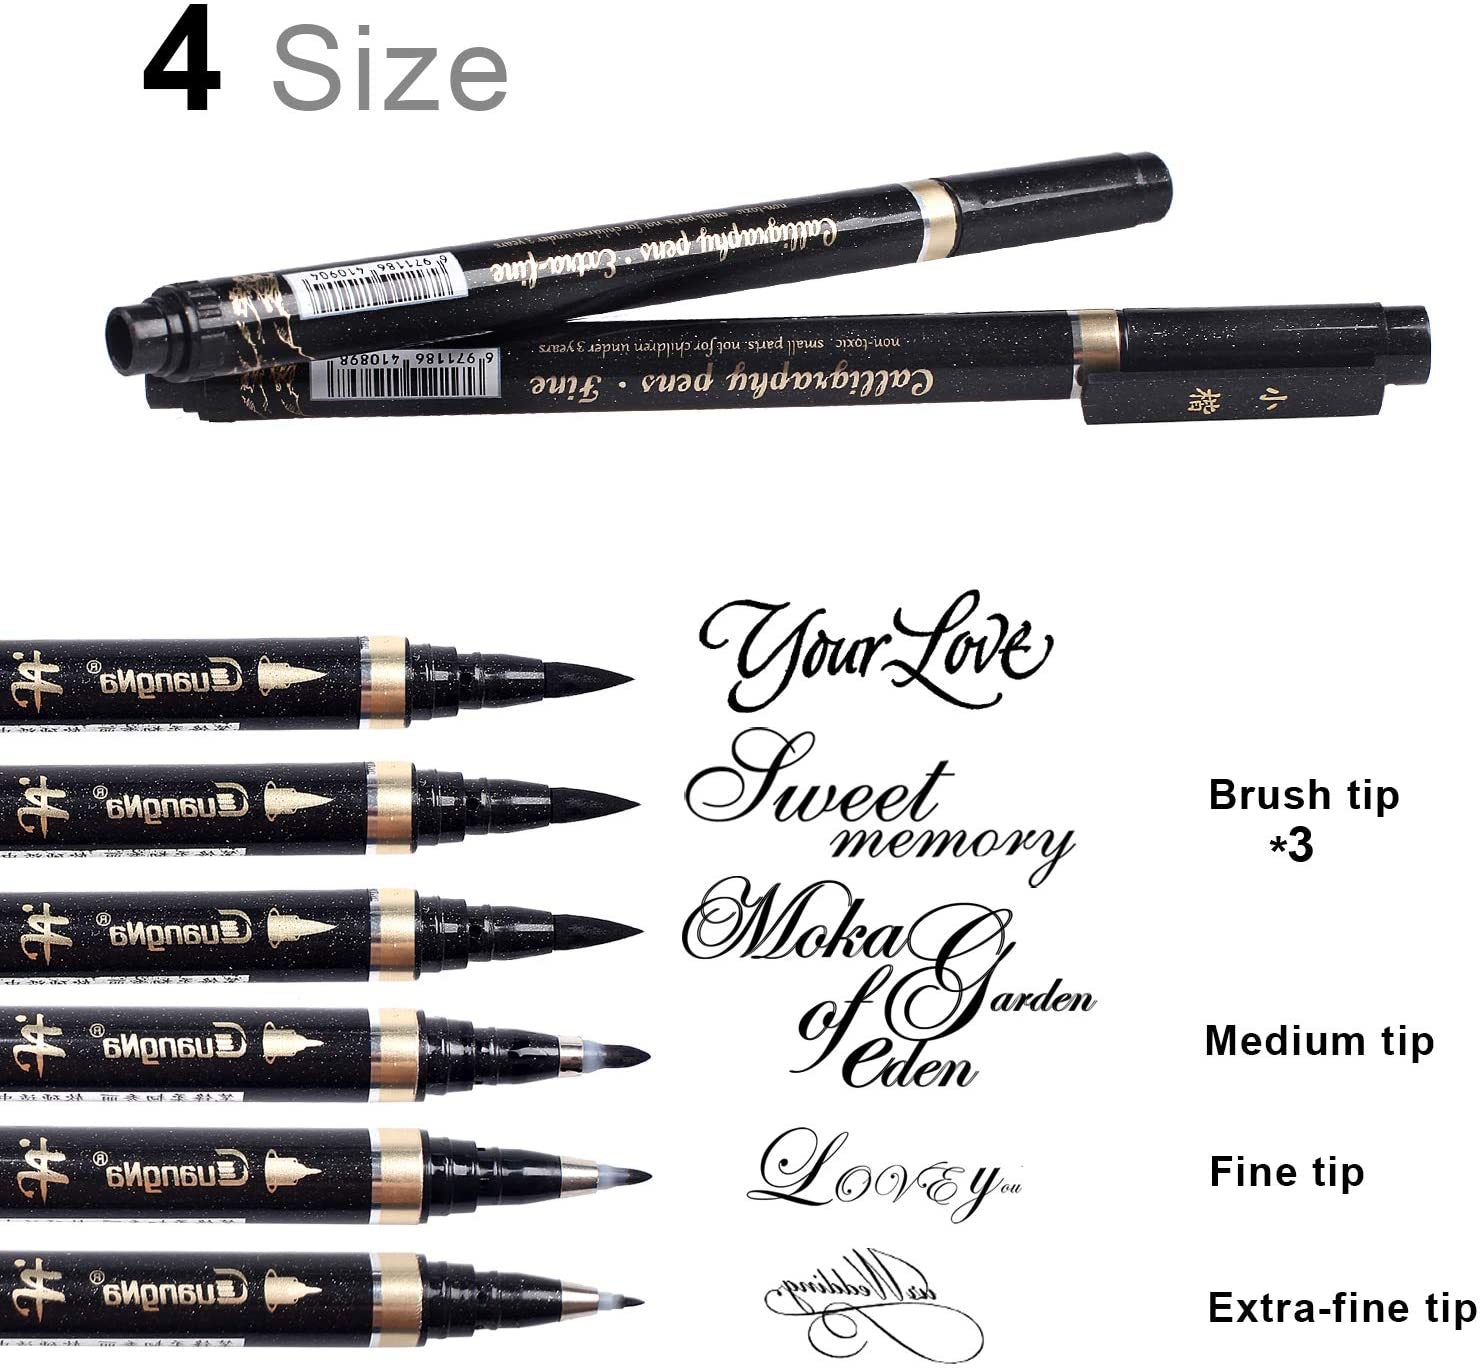 Kalligrafie Pen - Reastar 6 Stuks Black Brush Marker Pen Hand Belettering Pennen-Voor Belettering, Beginners Schrijven, handtekening